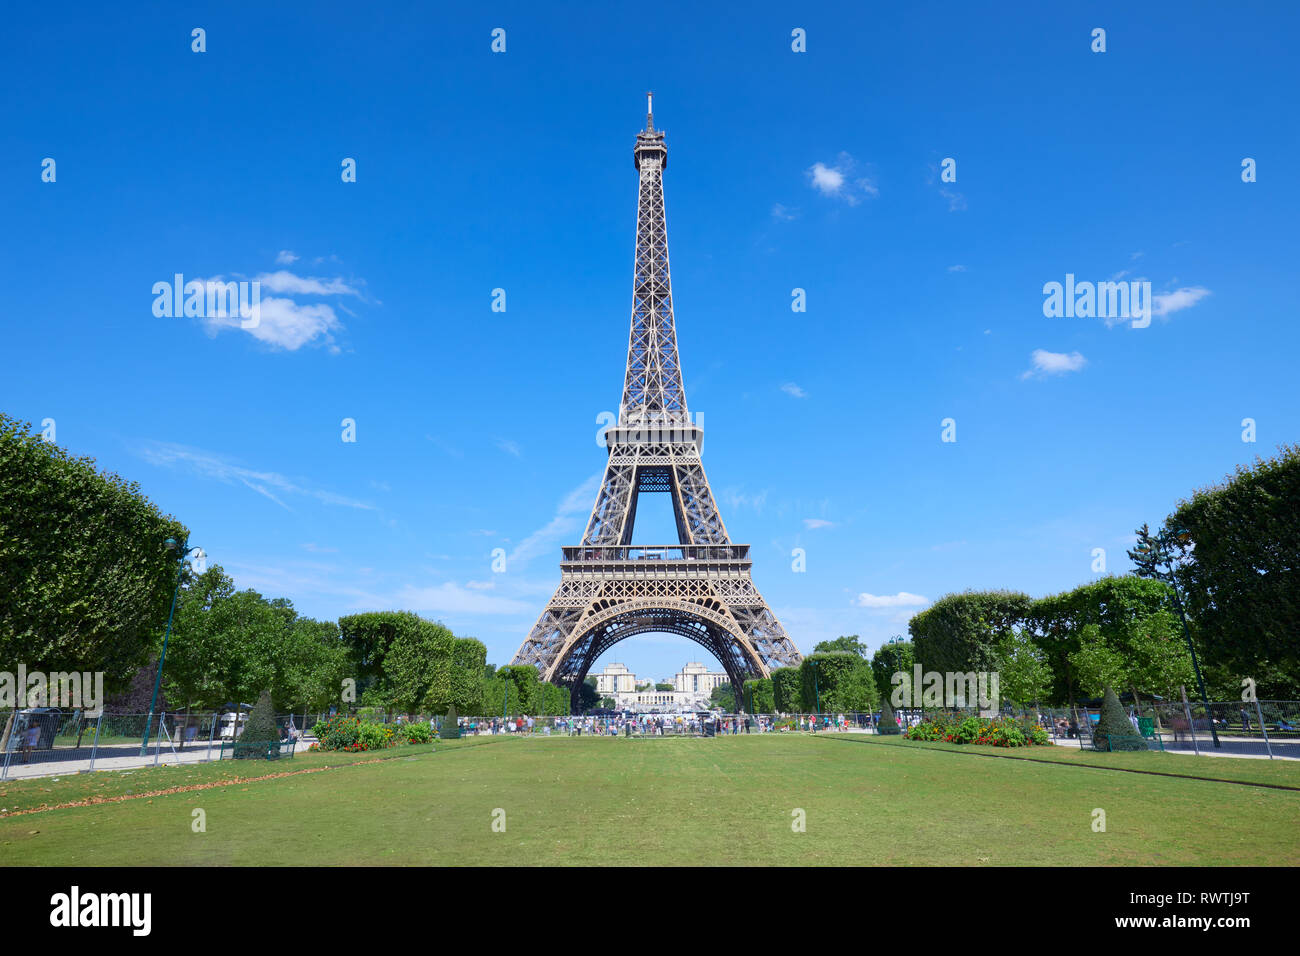 Tour Eiffel à Paris et vert vide Champ de Mars pré dans une journée ensoleillée, ciel bleu clair Banque D'Images